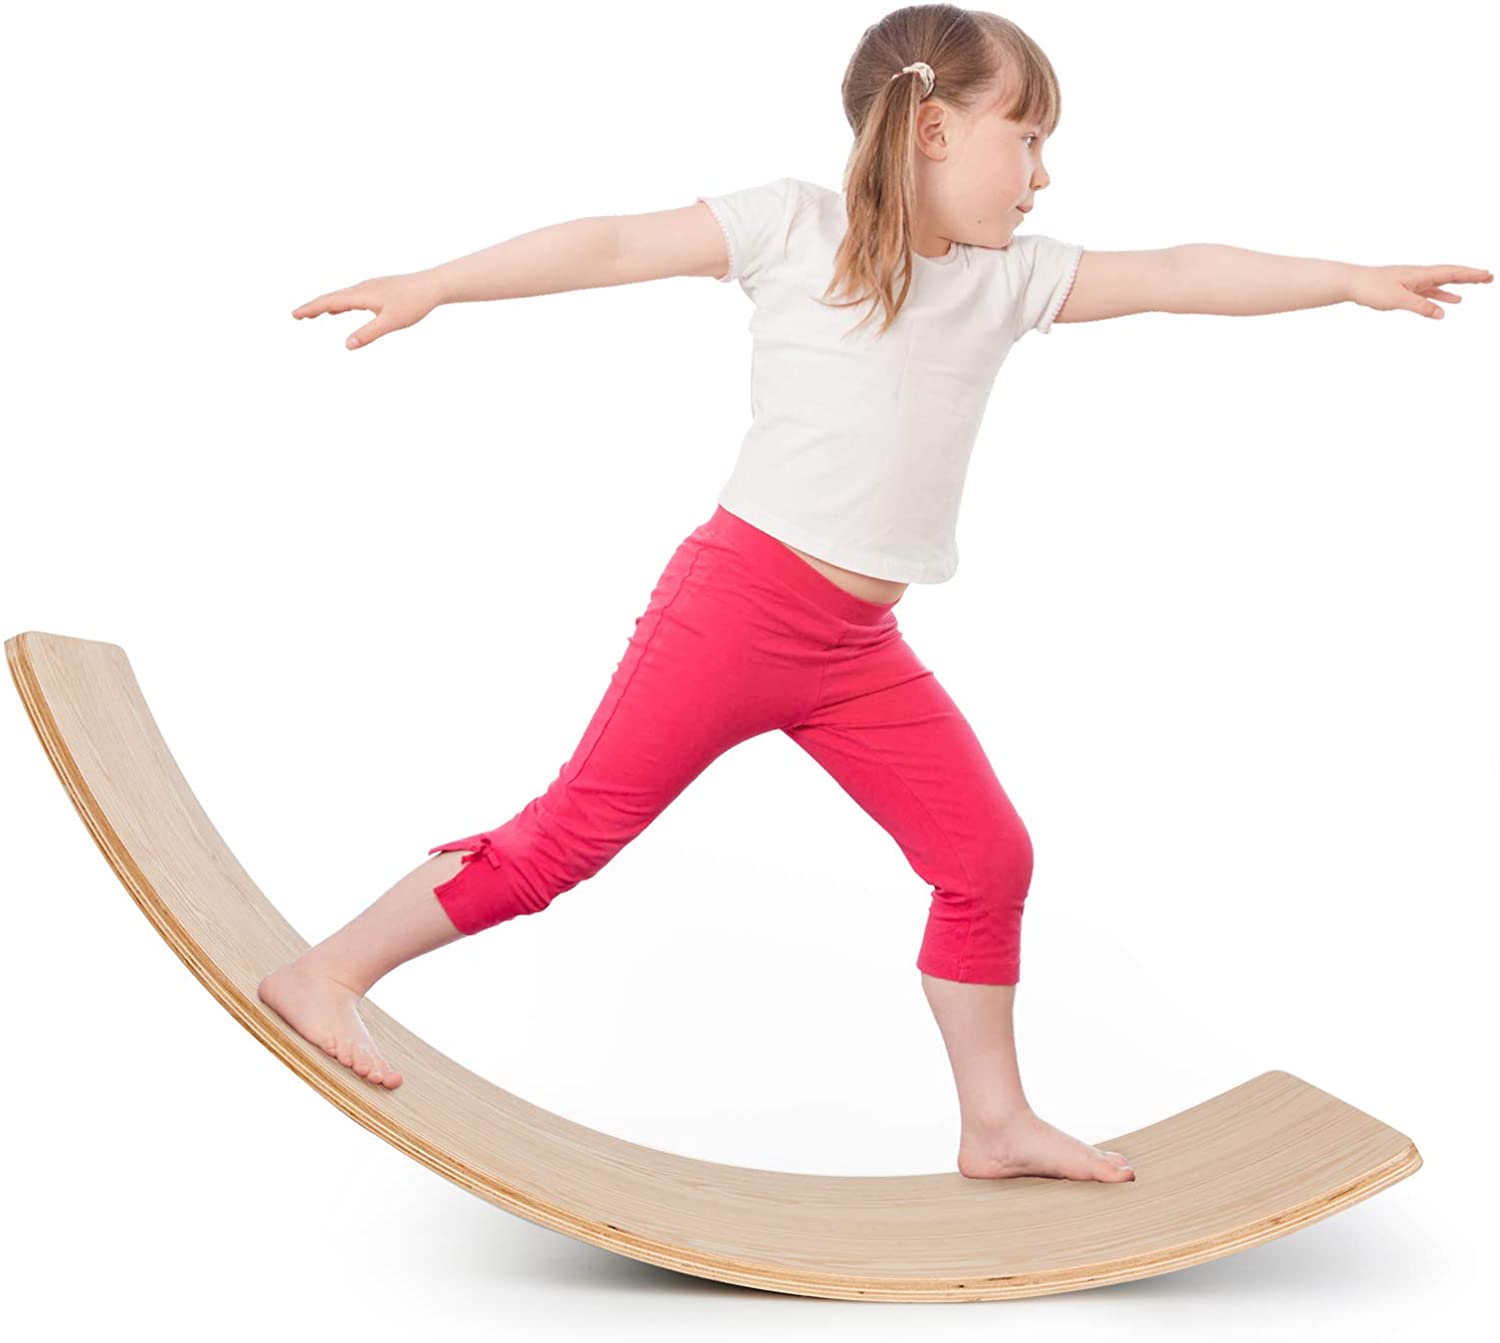 Tabla balanceadora en madera – Equilibrio y estimulación vestibular –  Asistronic